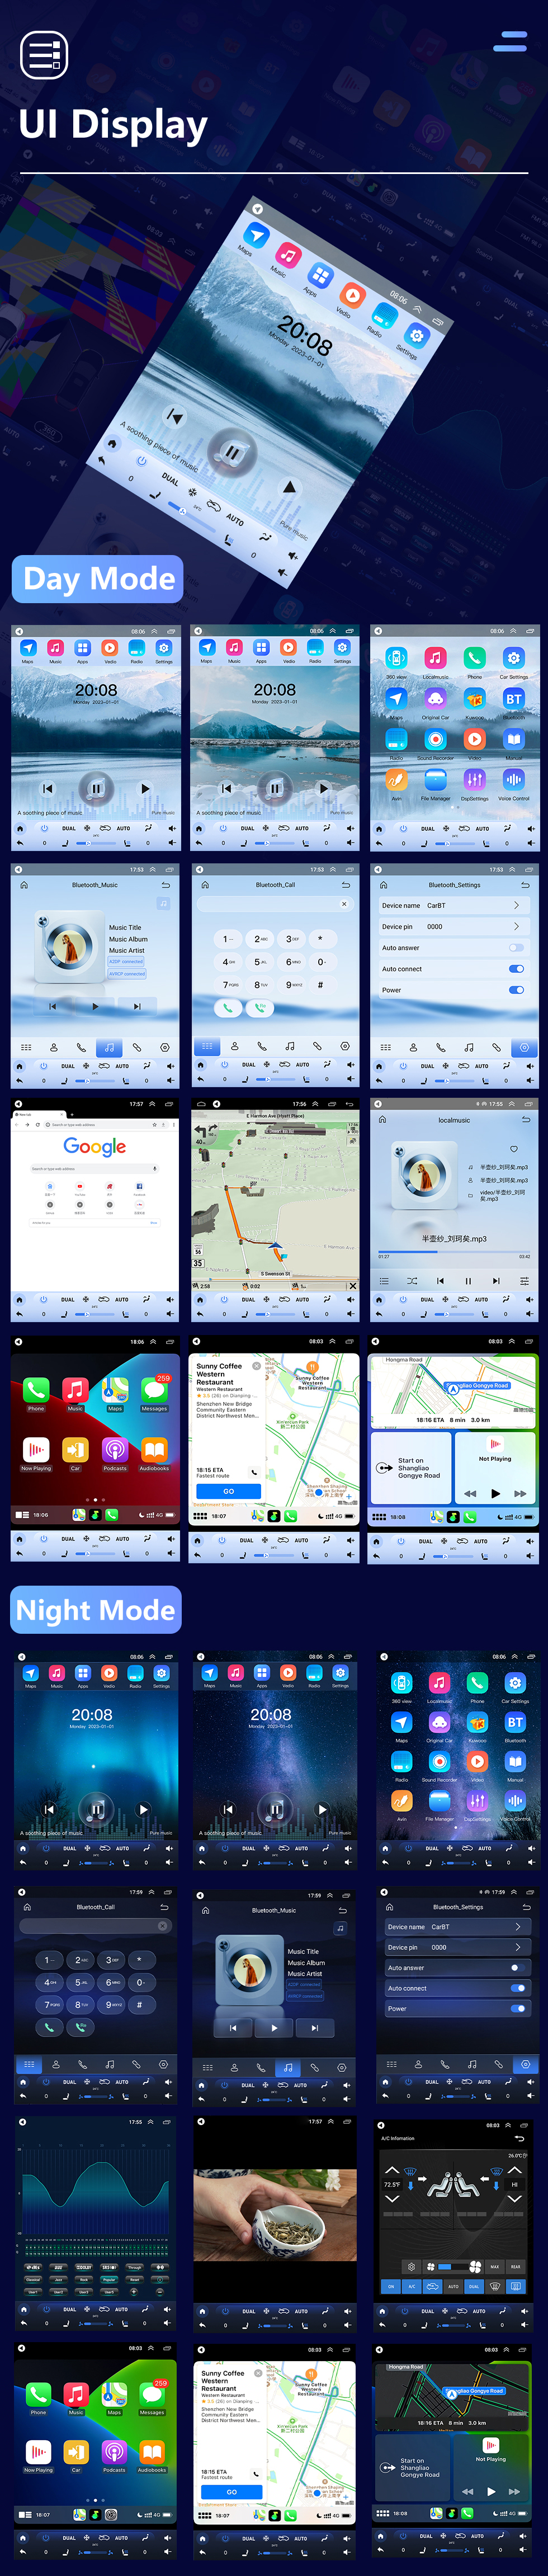 Seicane Android 10.0 9,7 pouces pour 2005-2010 Radio Nissan Tiida avec système de navigation GPS à écran tactile HD Prise en charge Bluetooth Carplay TPMS